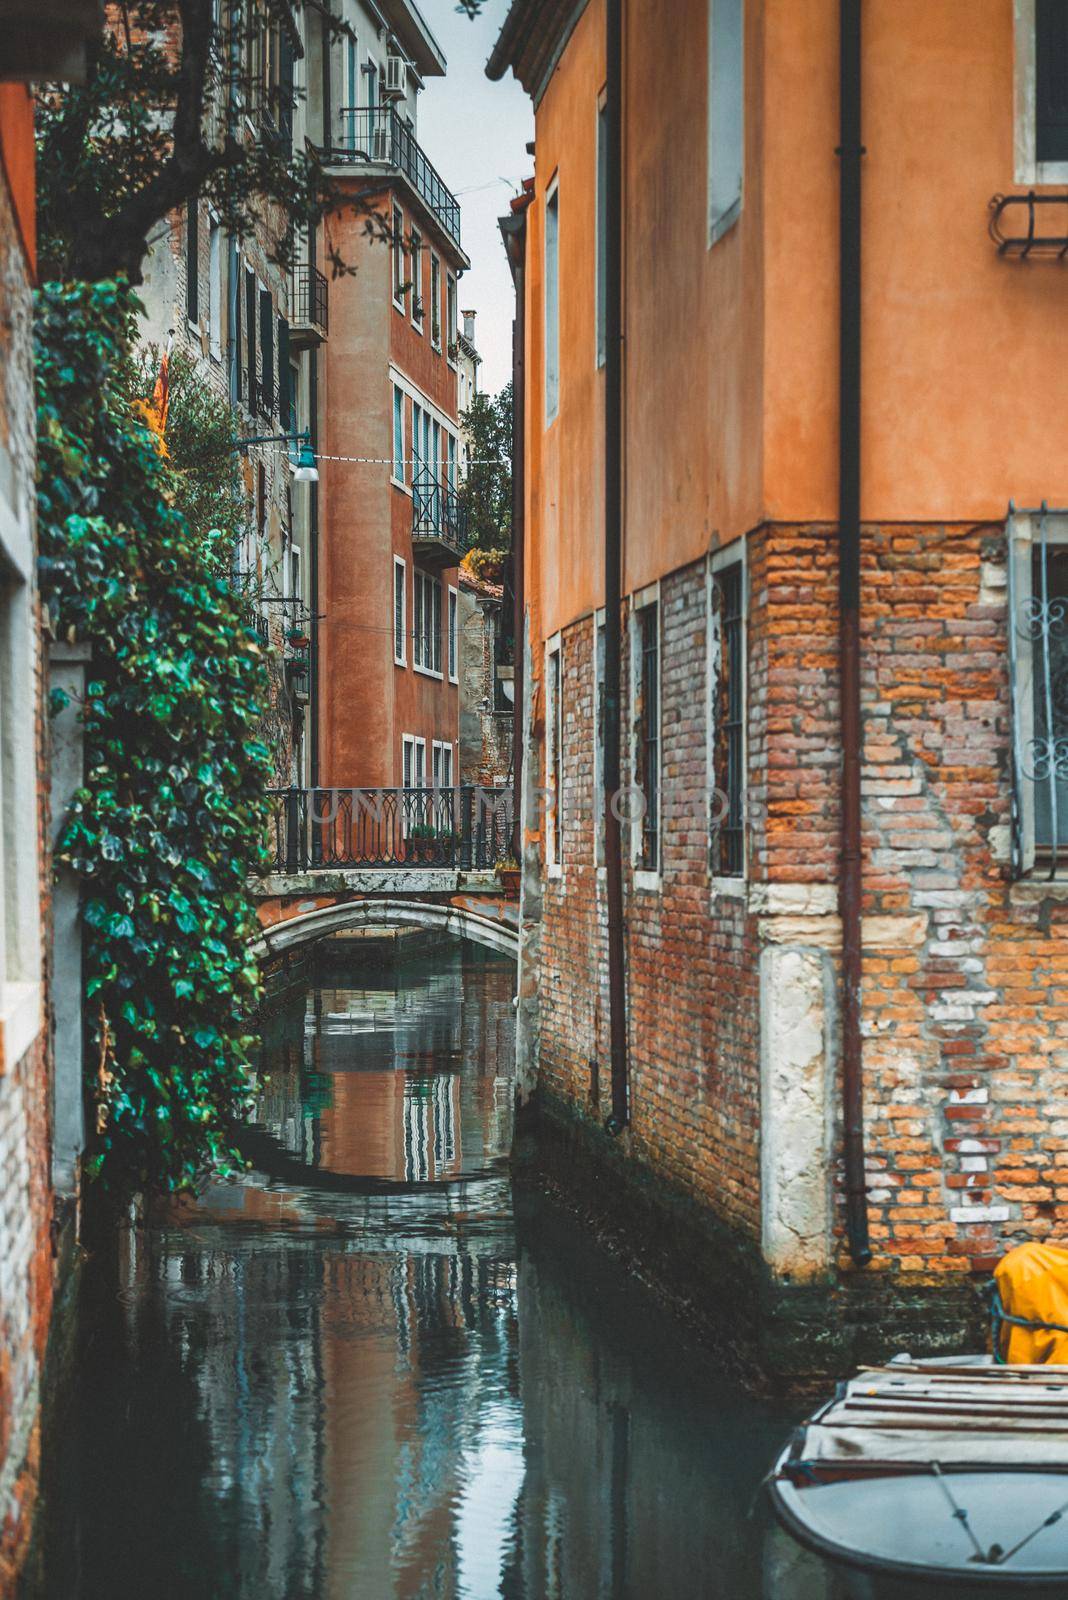 bridge across the canal in Venice by tan4ikk1